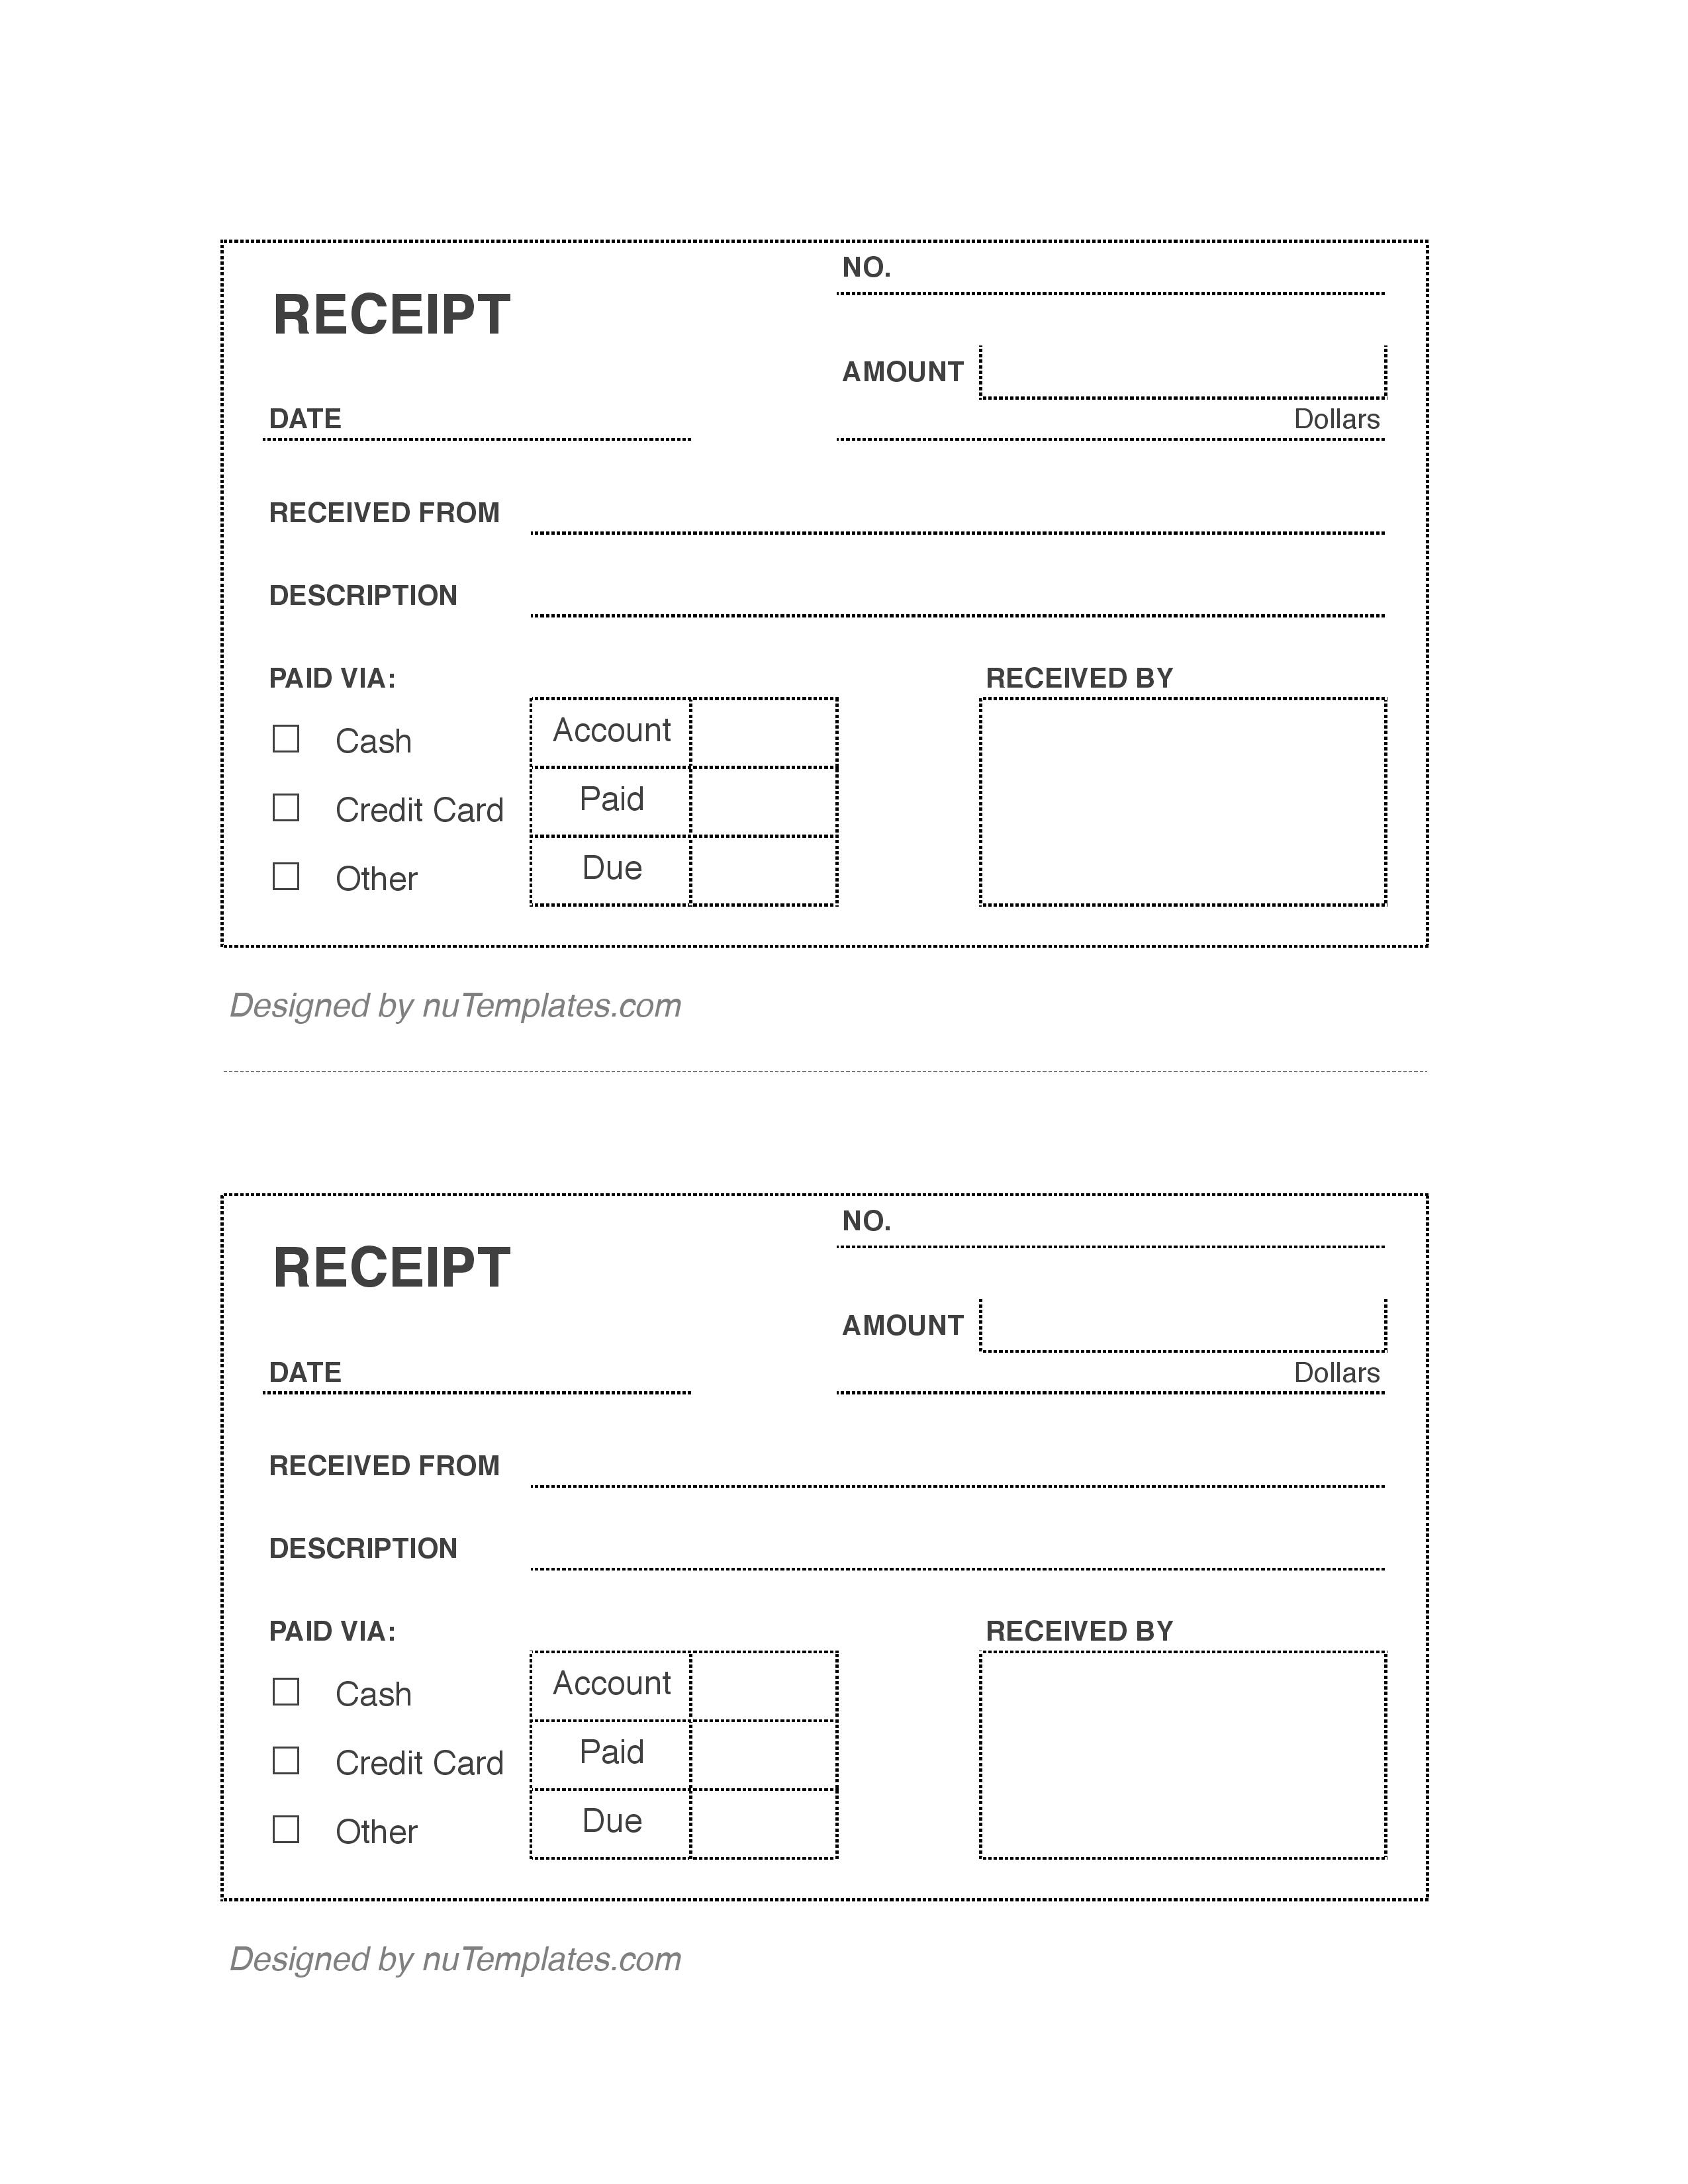 payroll-payment-receipt-template-premium-receipt-forms